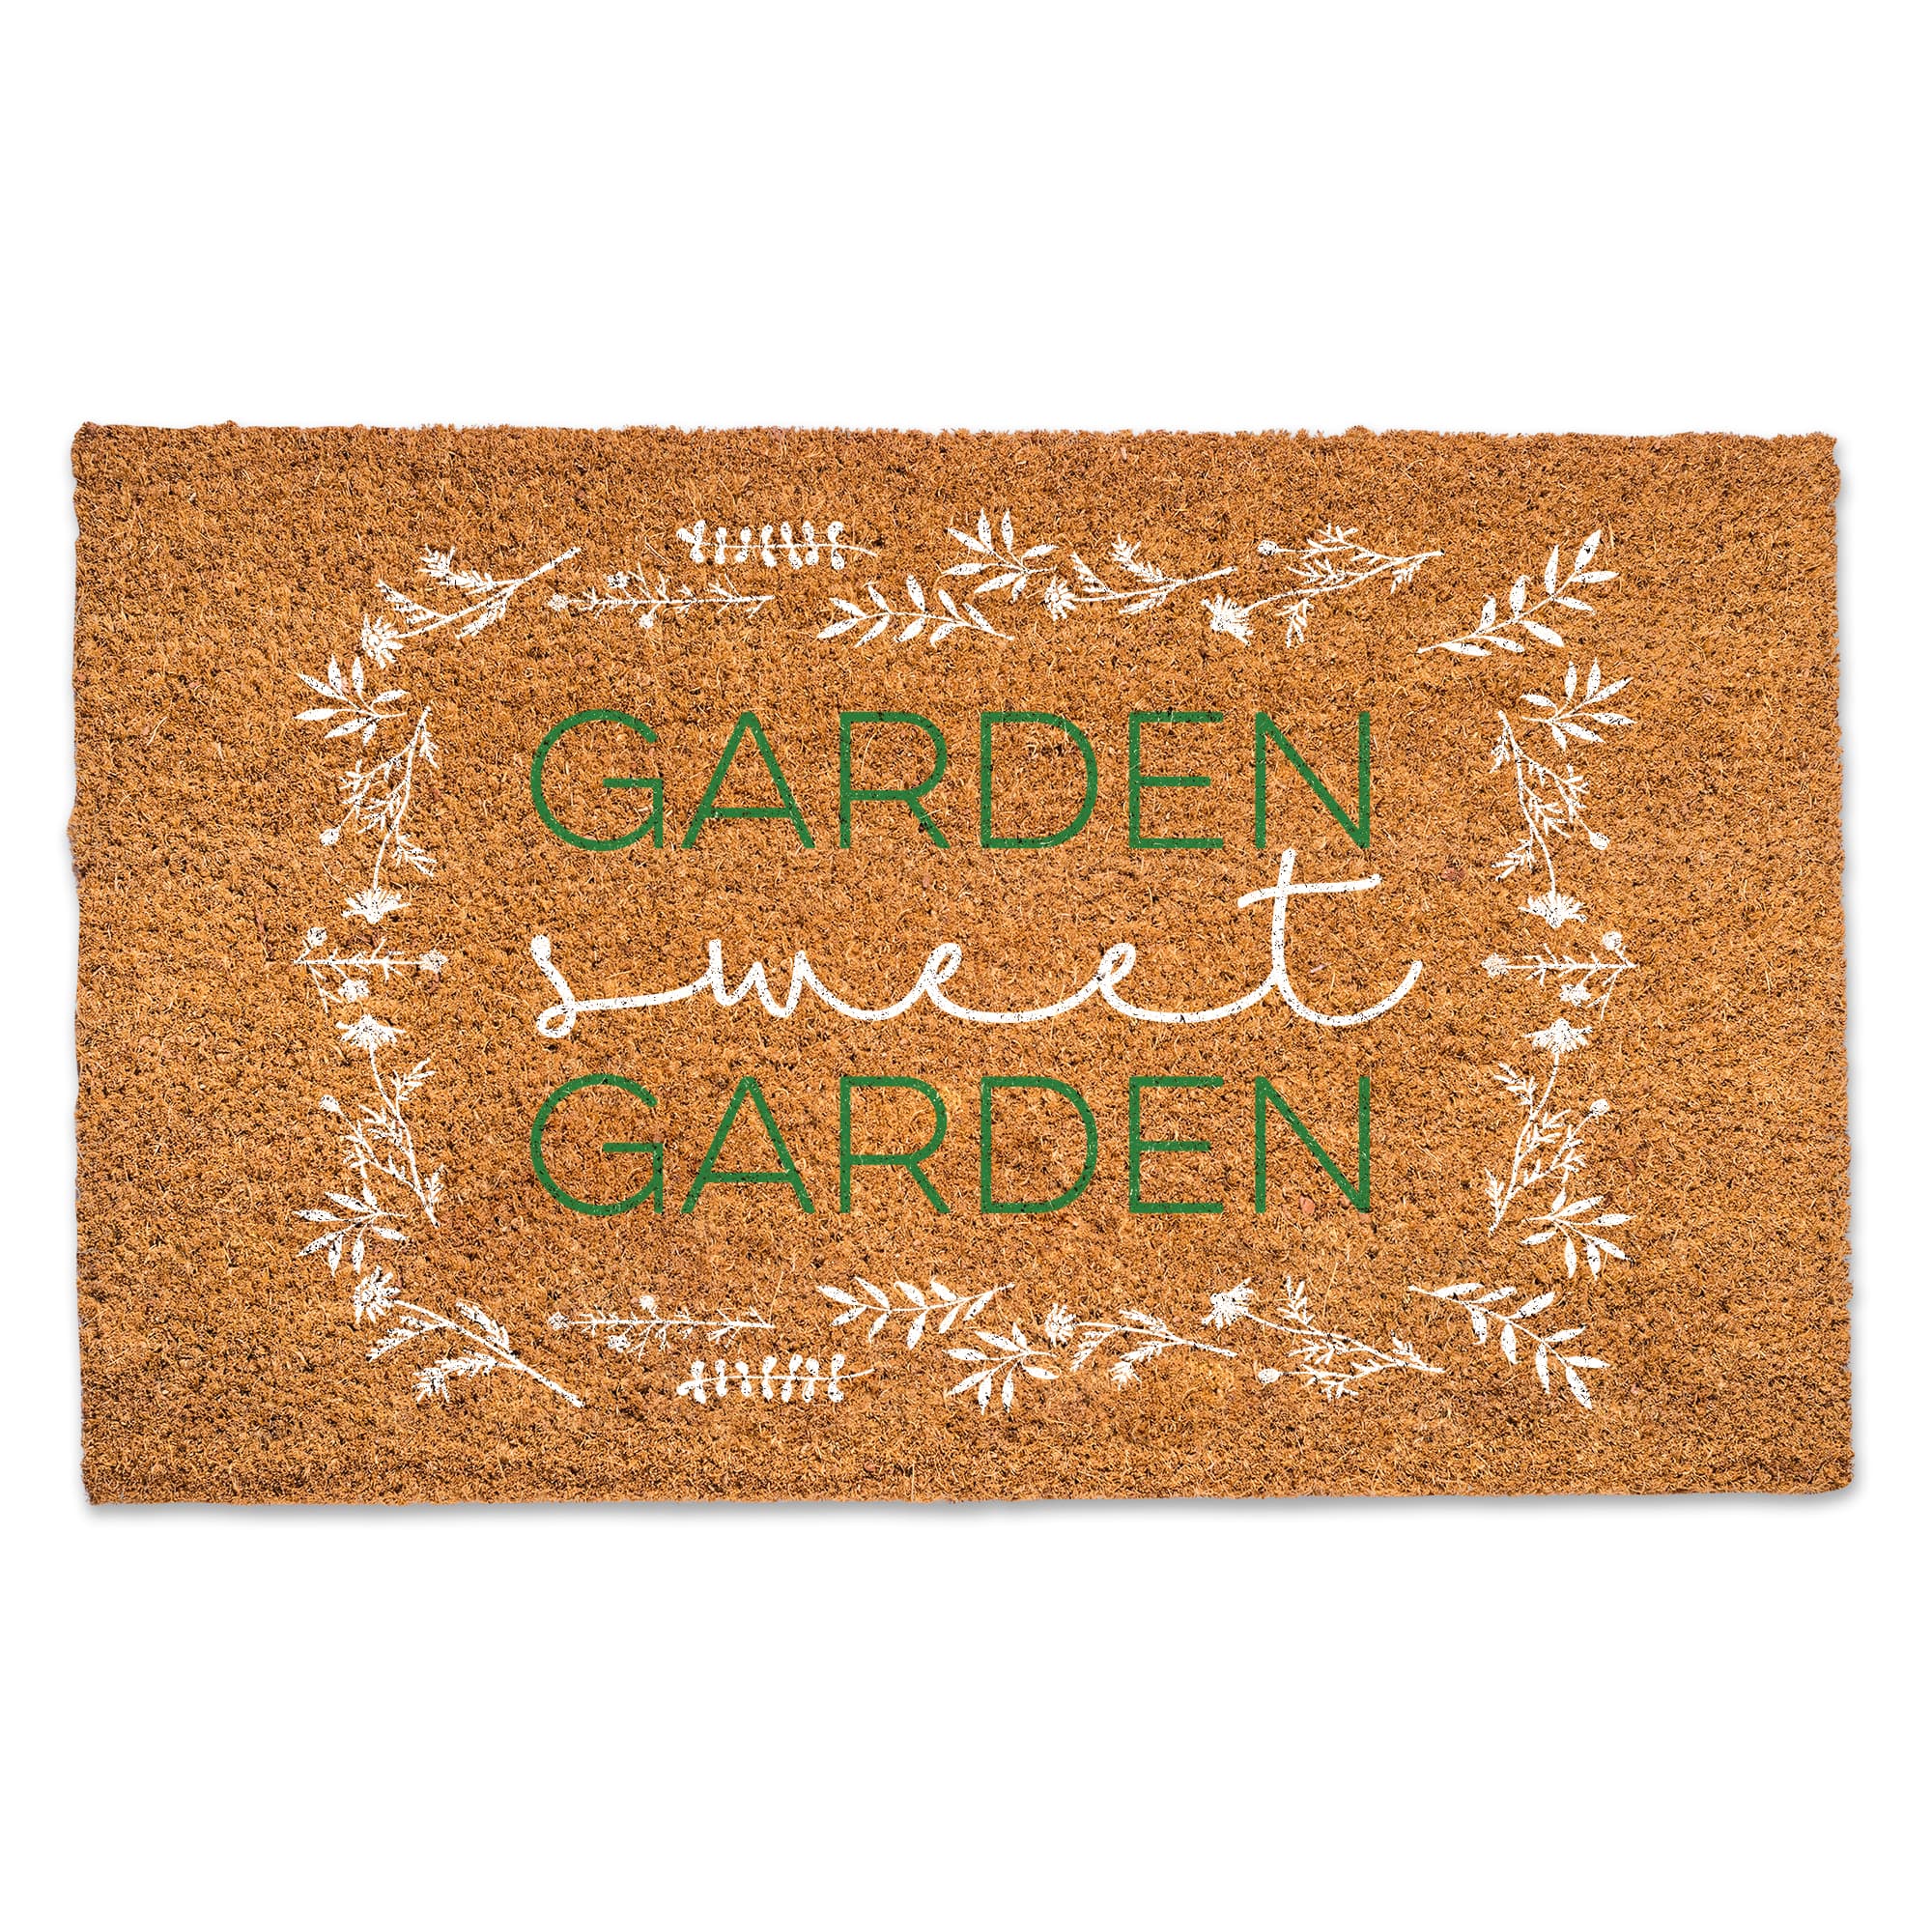 Garden Sweet Garden Doormat